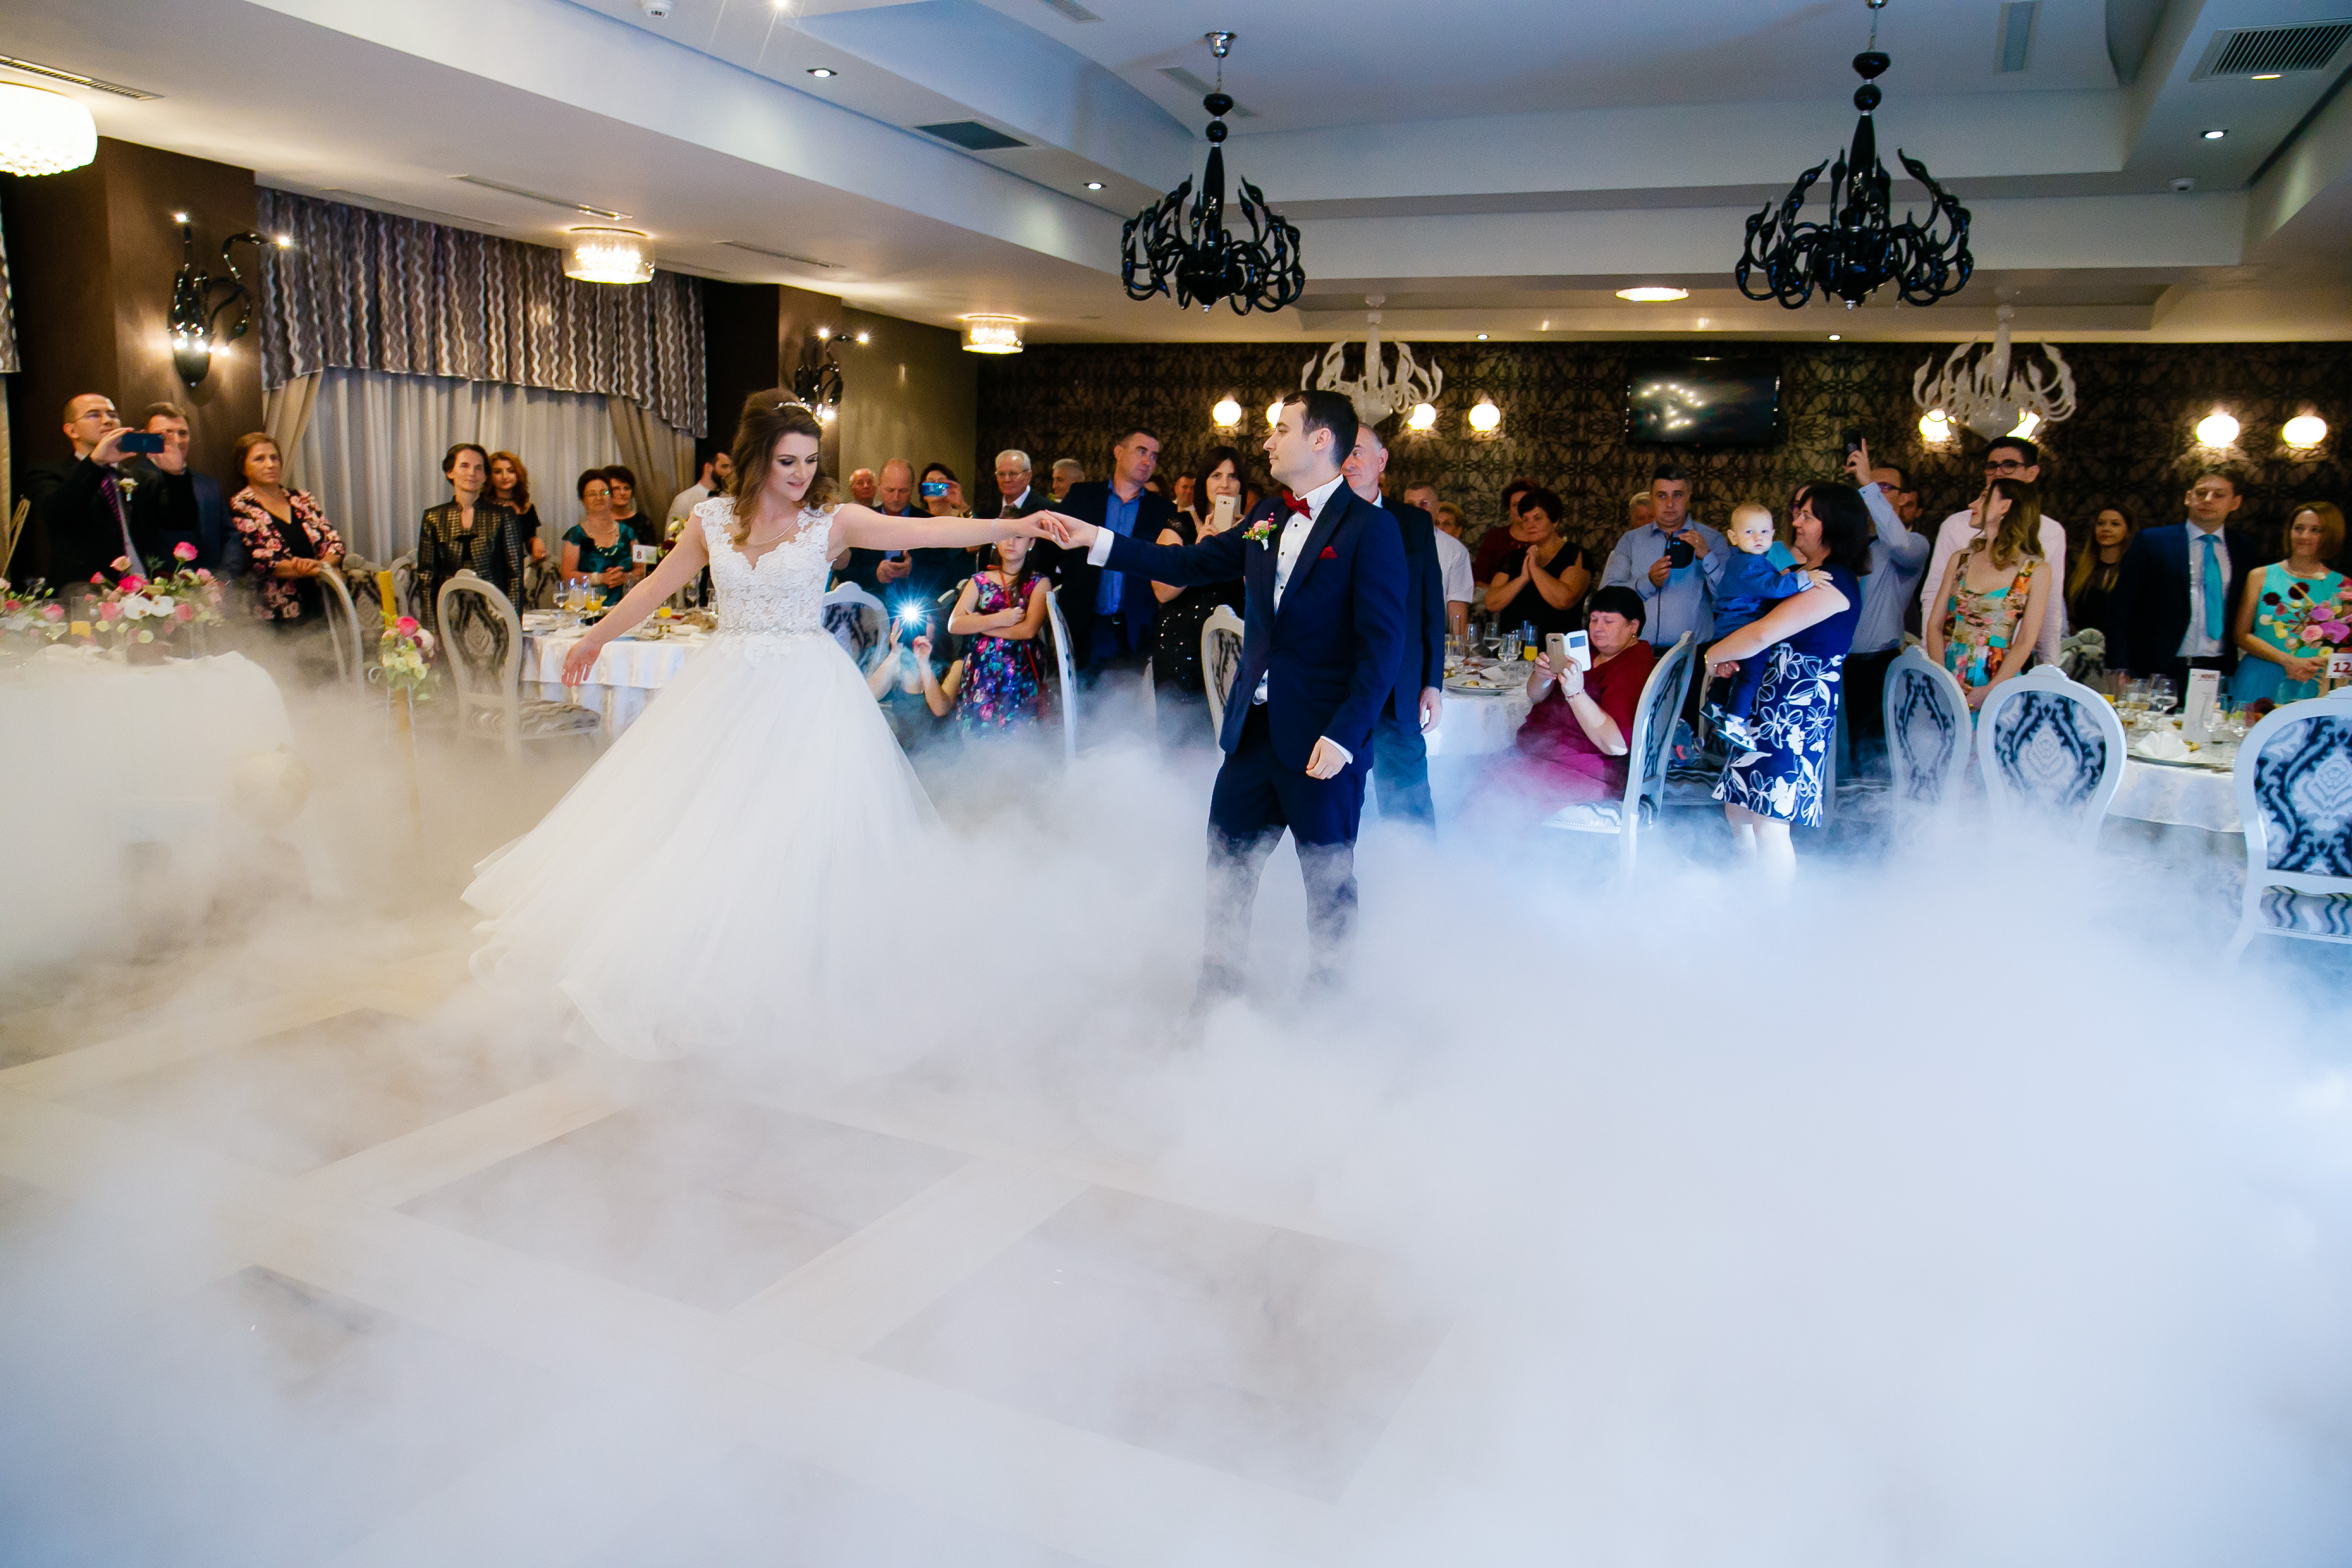 Nunta la Pleiada Iasi Alexandra si Vlad dansul mirilor fum greu www.paulpadurariu.ro © 2017 Paul Padurariu fotograf de nunta iasi